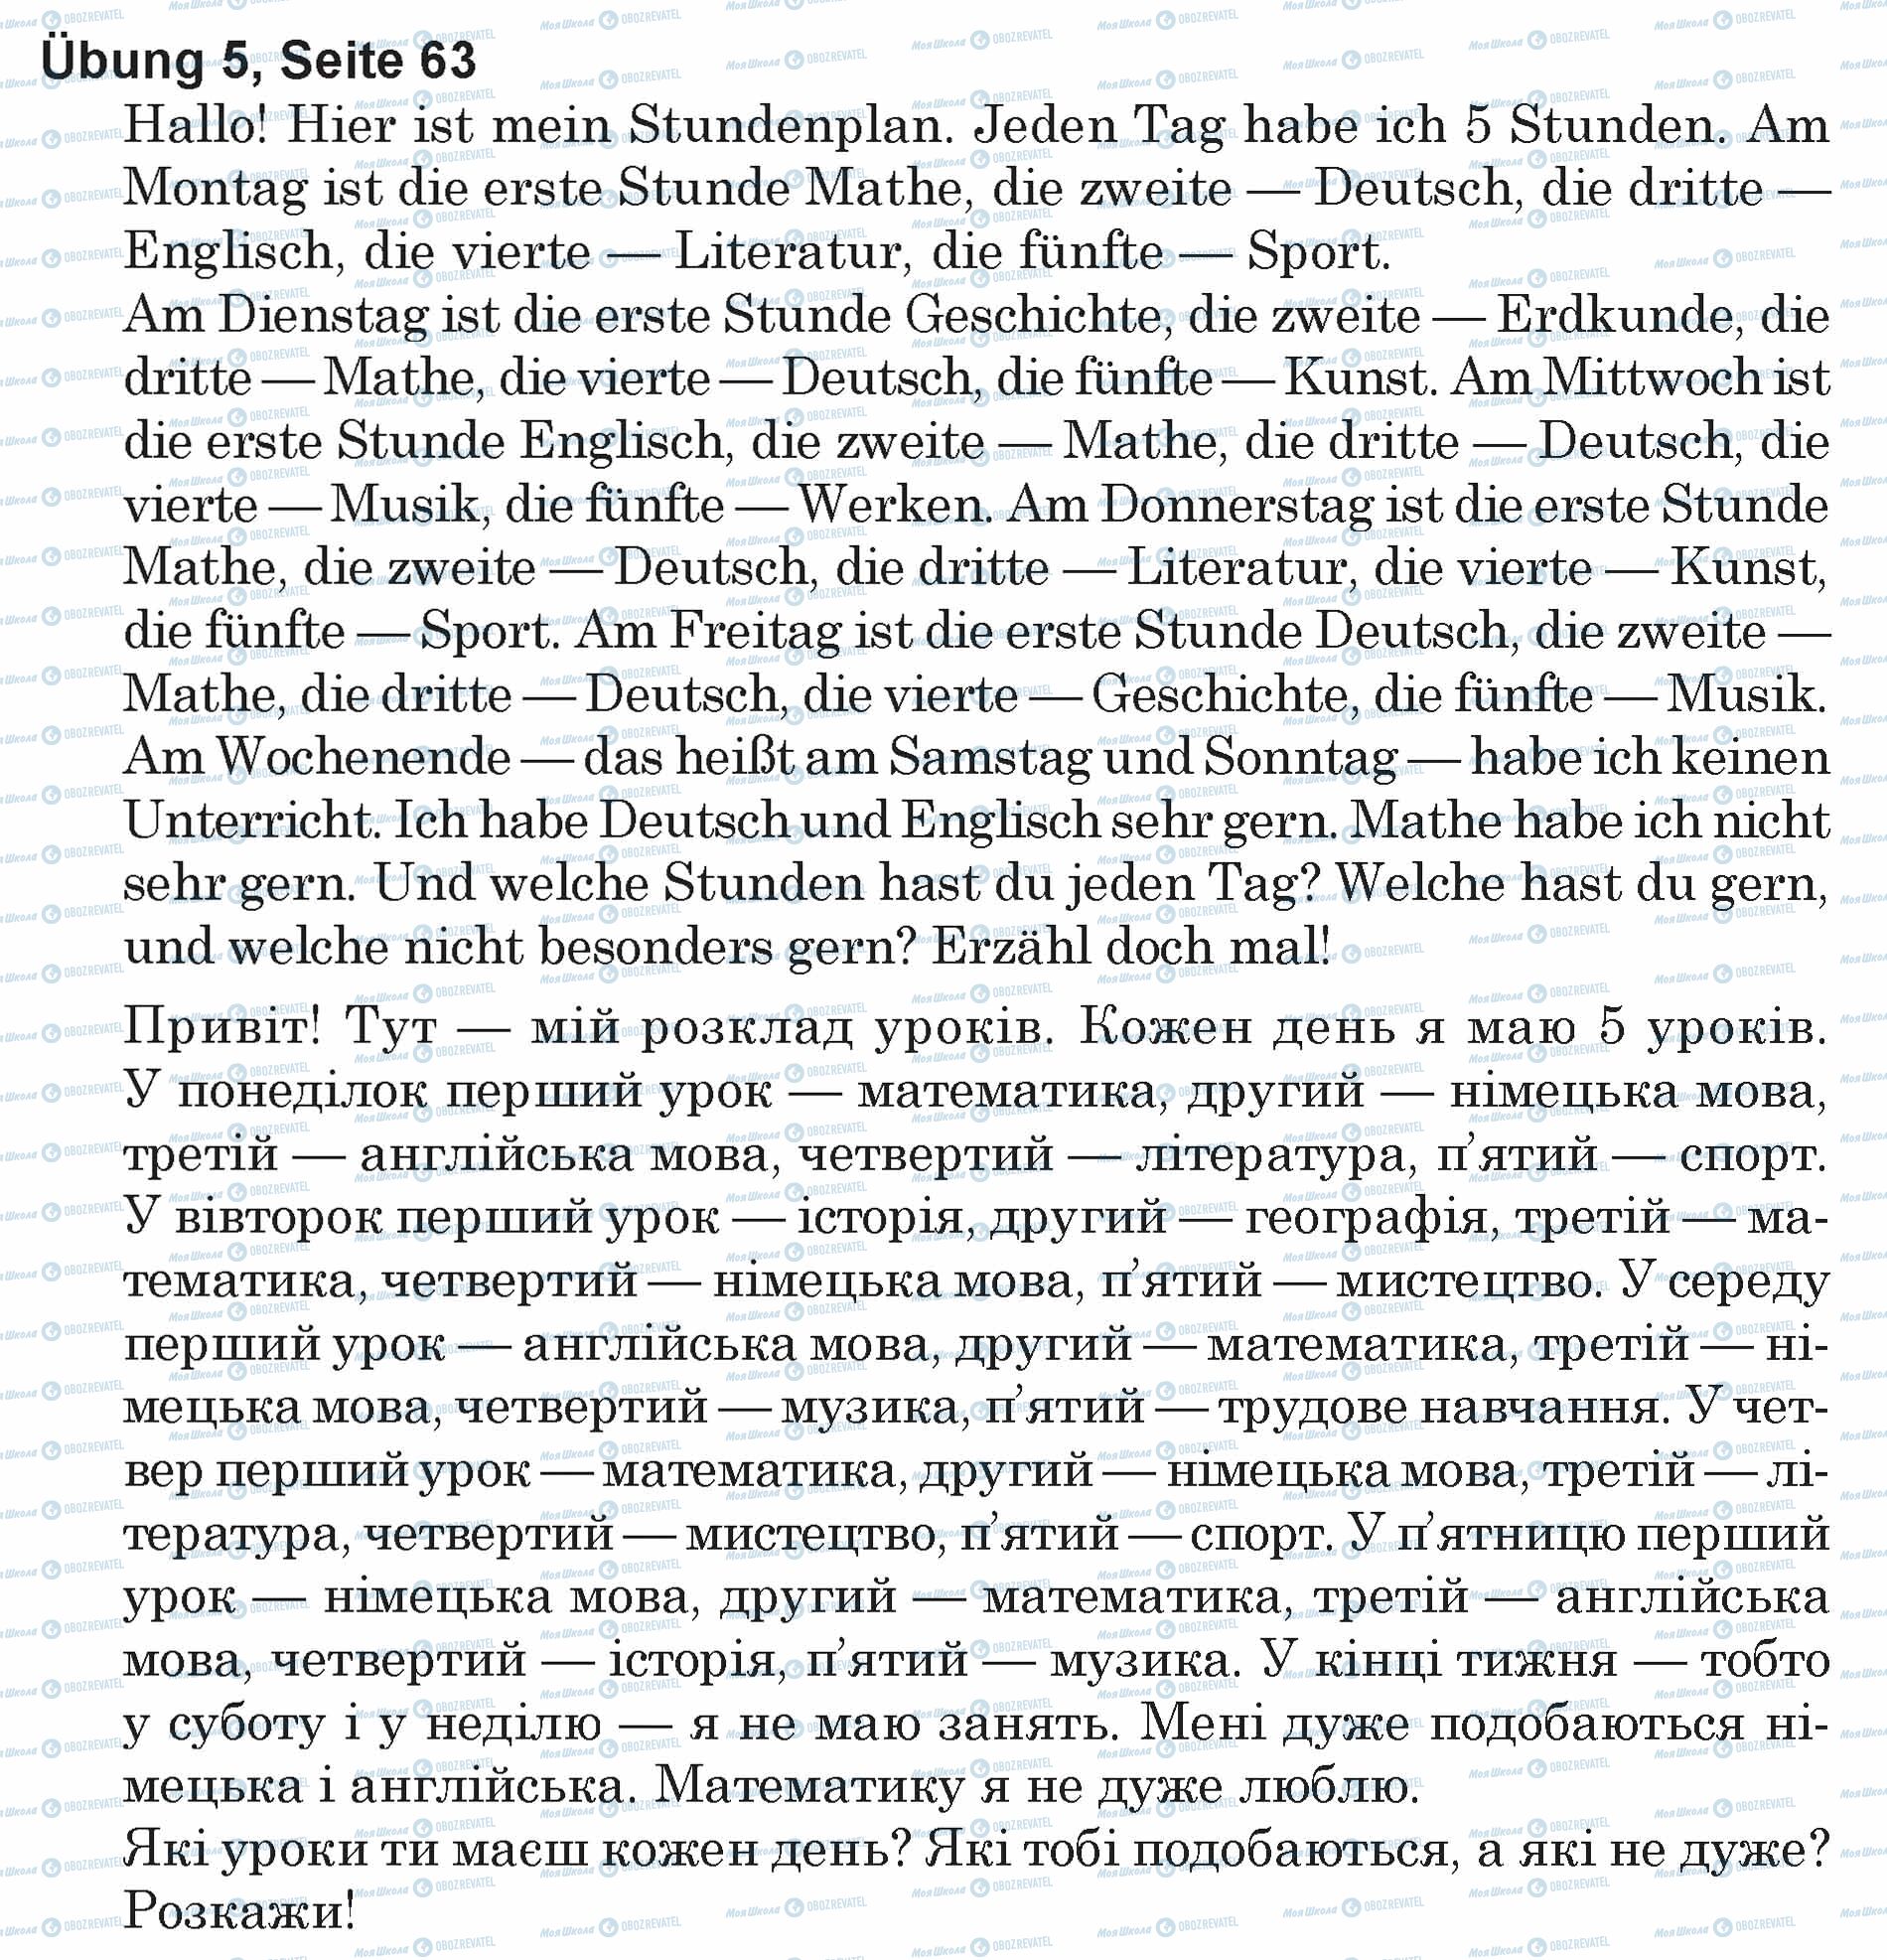 ГДЗ Немецкий язык 5 класс страница Ubung 5, Seite 63